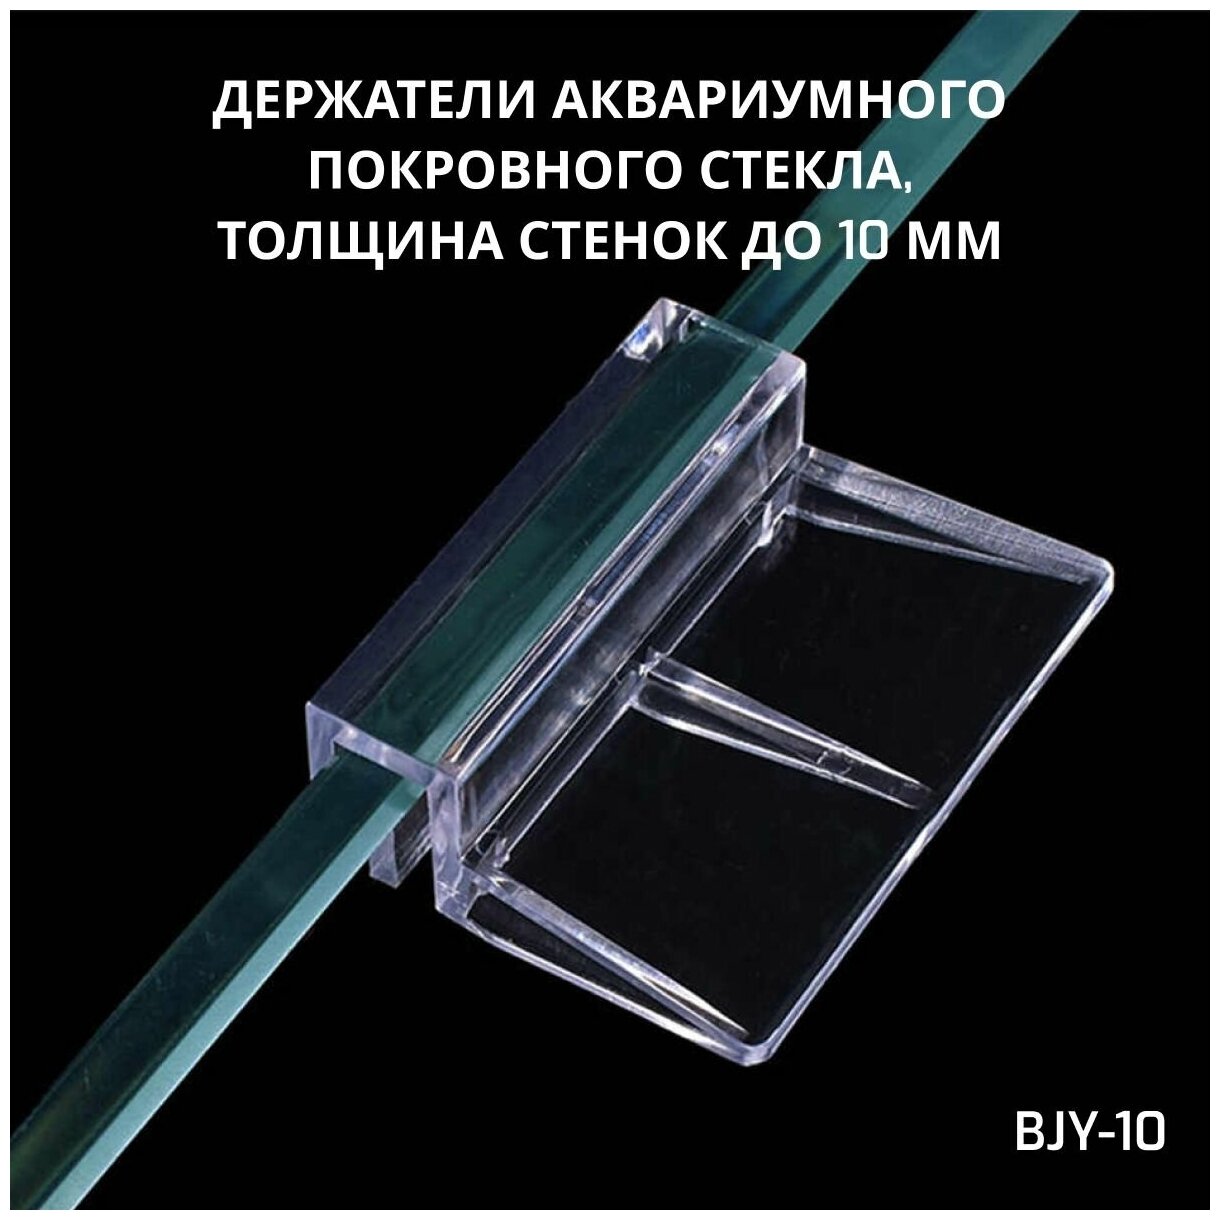 SHANDA BJY-10 Держатели аквариумного покровного стекла, толщина стенок до 10мм, 4 шт